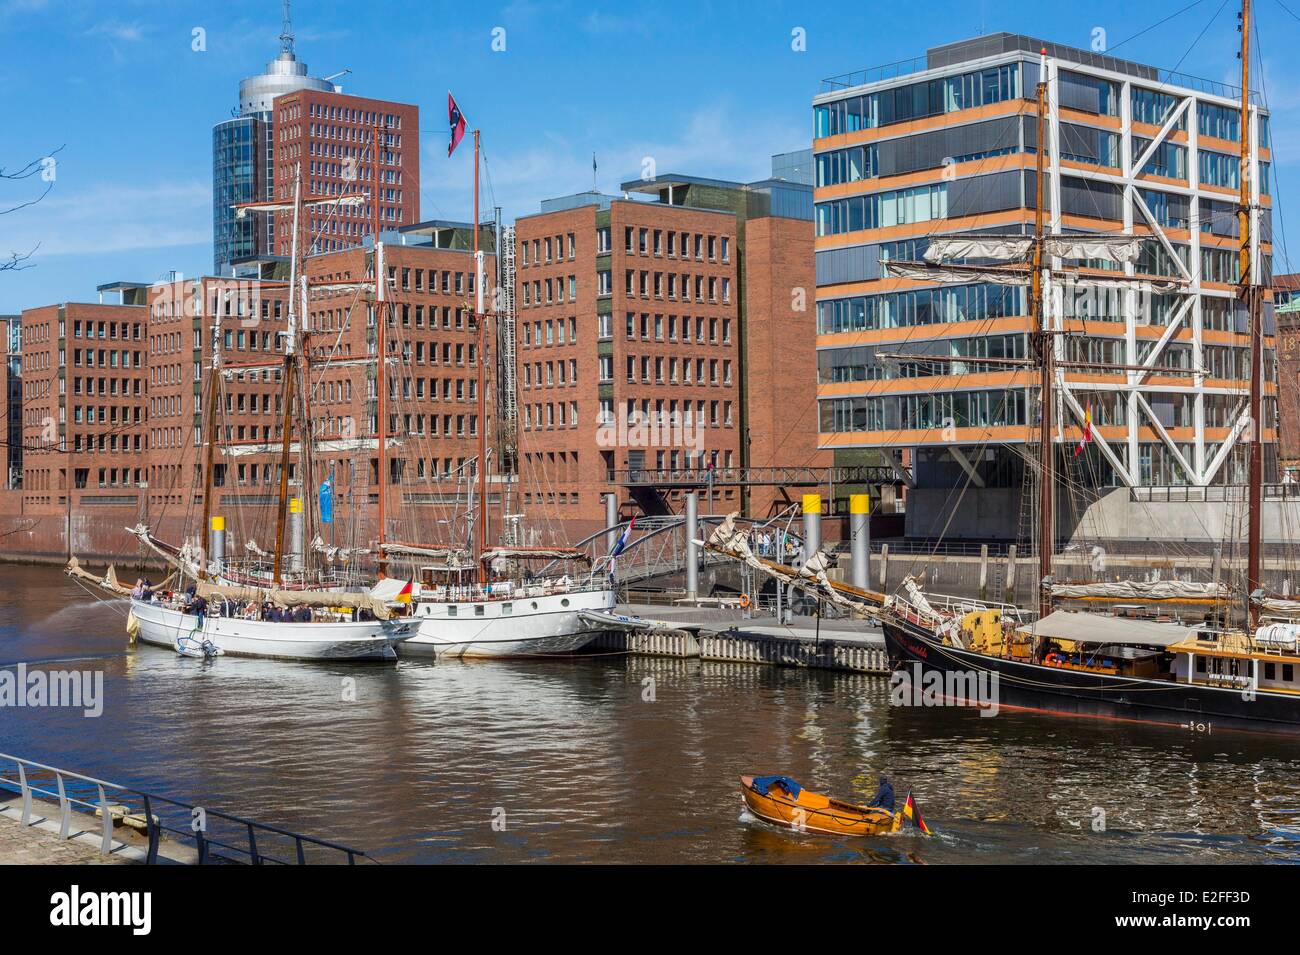 Alemania HafenCity de Hamburgo que desarrolla el proyecto más importante de planificación urbana europea con la rehabilitación de 155 Foto de stock